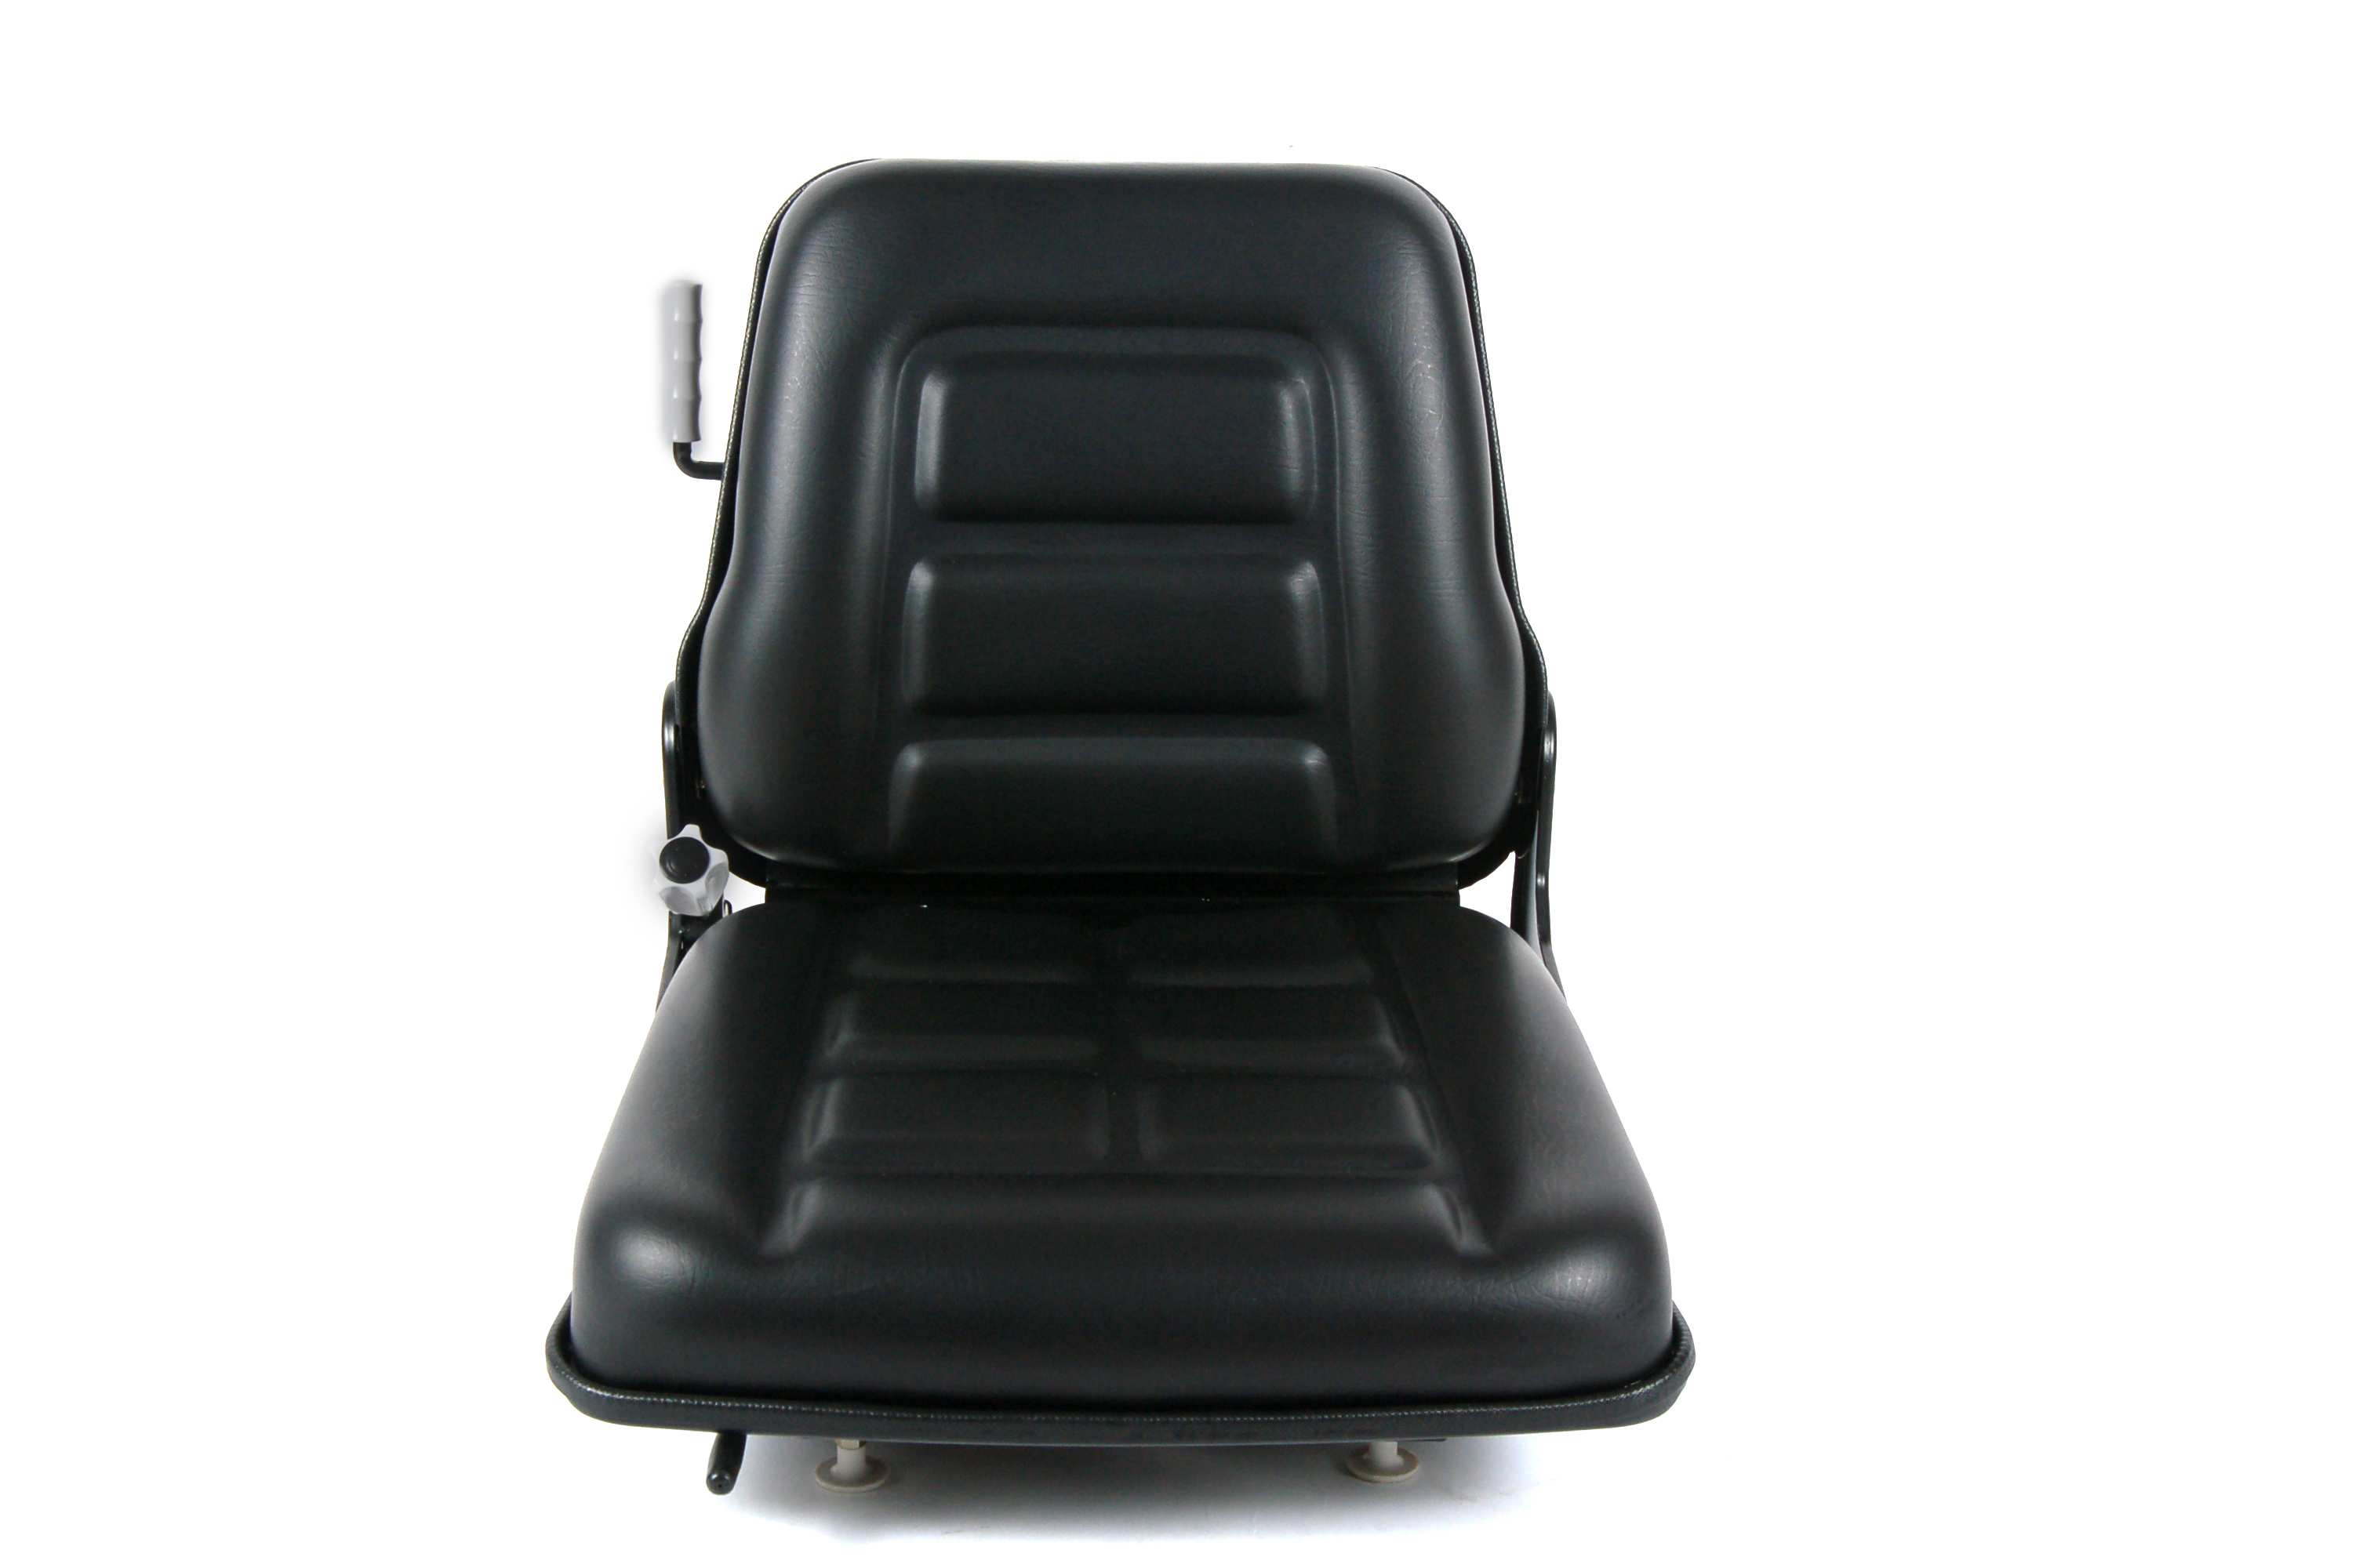 Aftermarket Material Handling Backrest Adjustable Forklift Seat